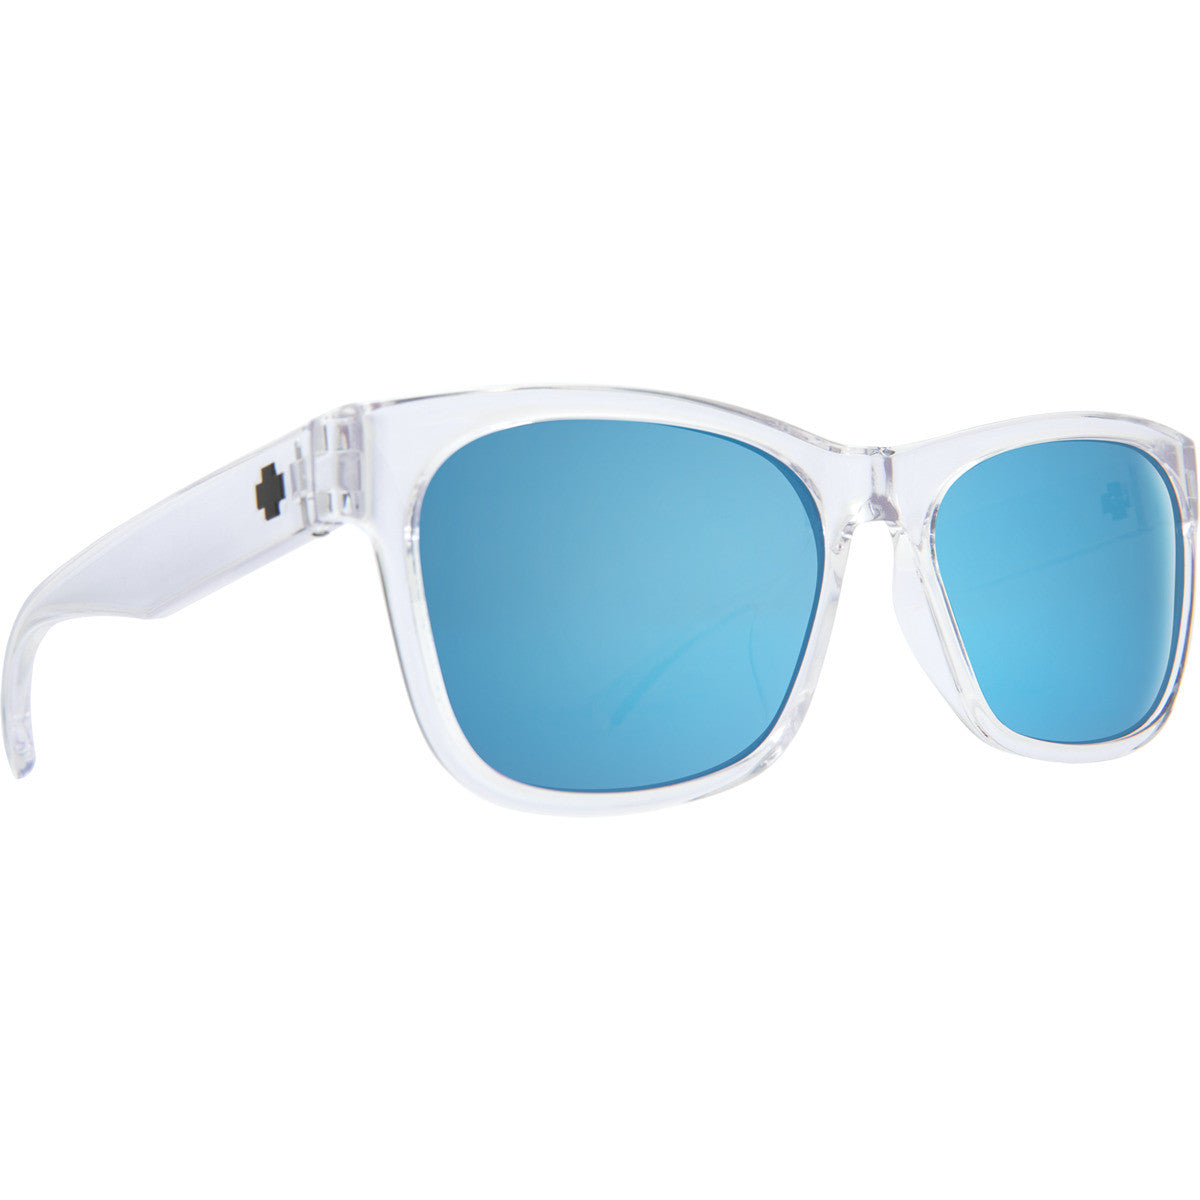 Spy Sundowner Sunglasses  Crystal 57-17-145